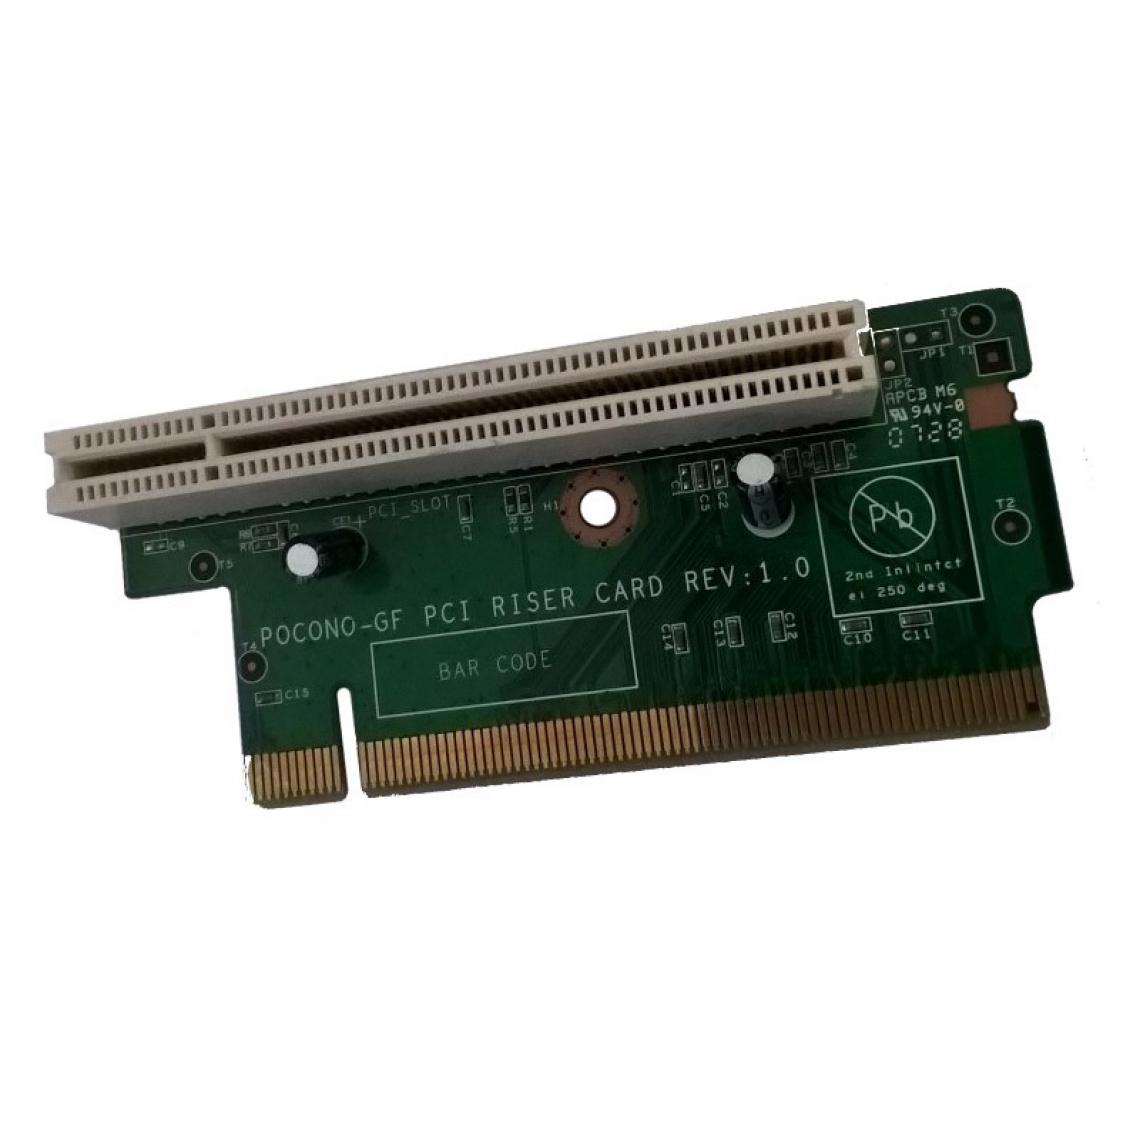 Ibm - Carte POCONO-GF PCI Riser Card REV1.0 1xPCI IBM Lenovo ThinkCentre M55 Type 8795 - Carte Contrôleur USB